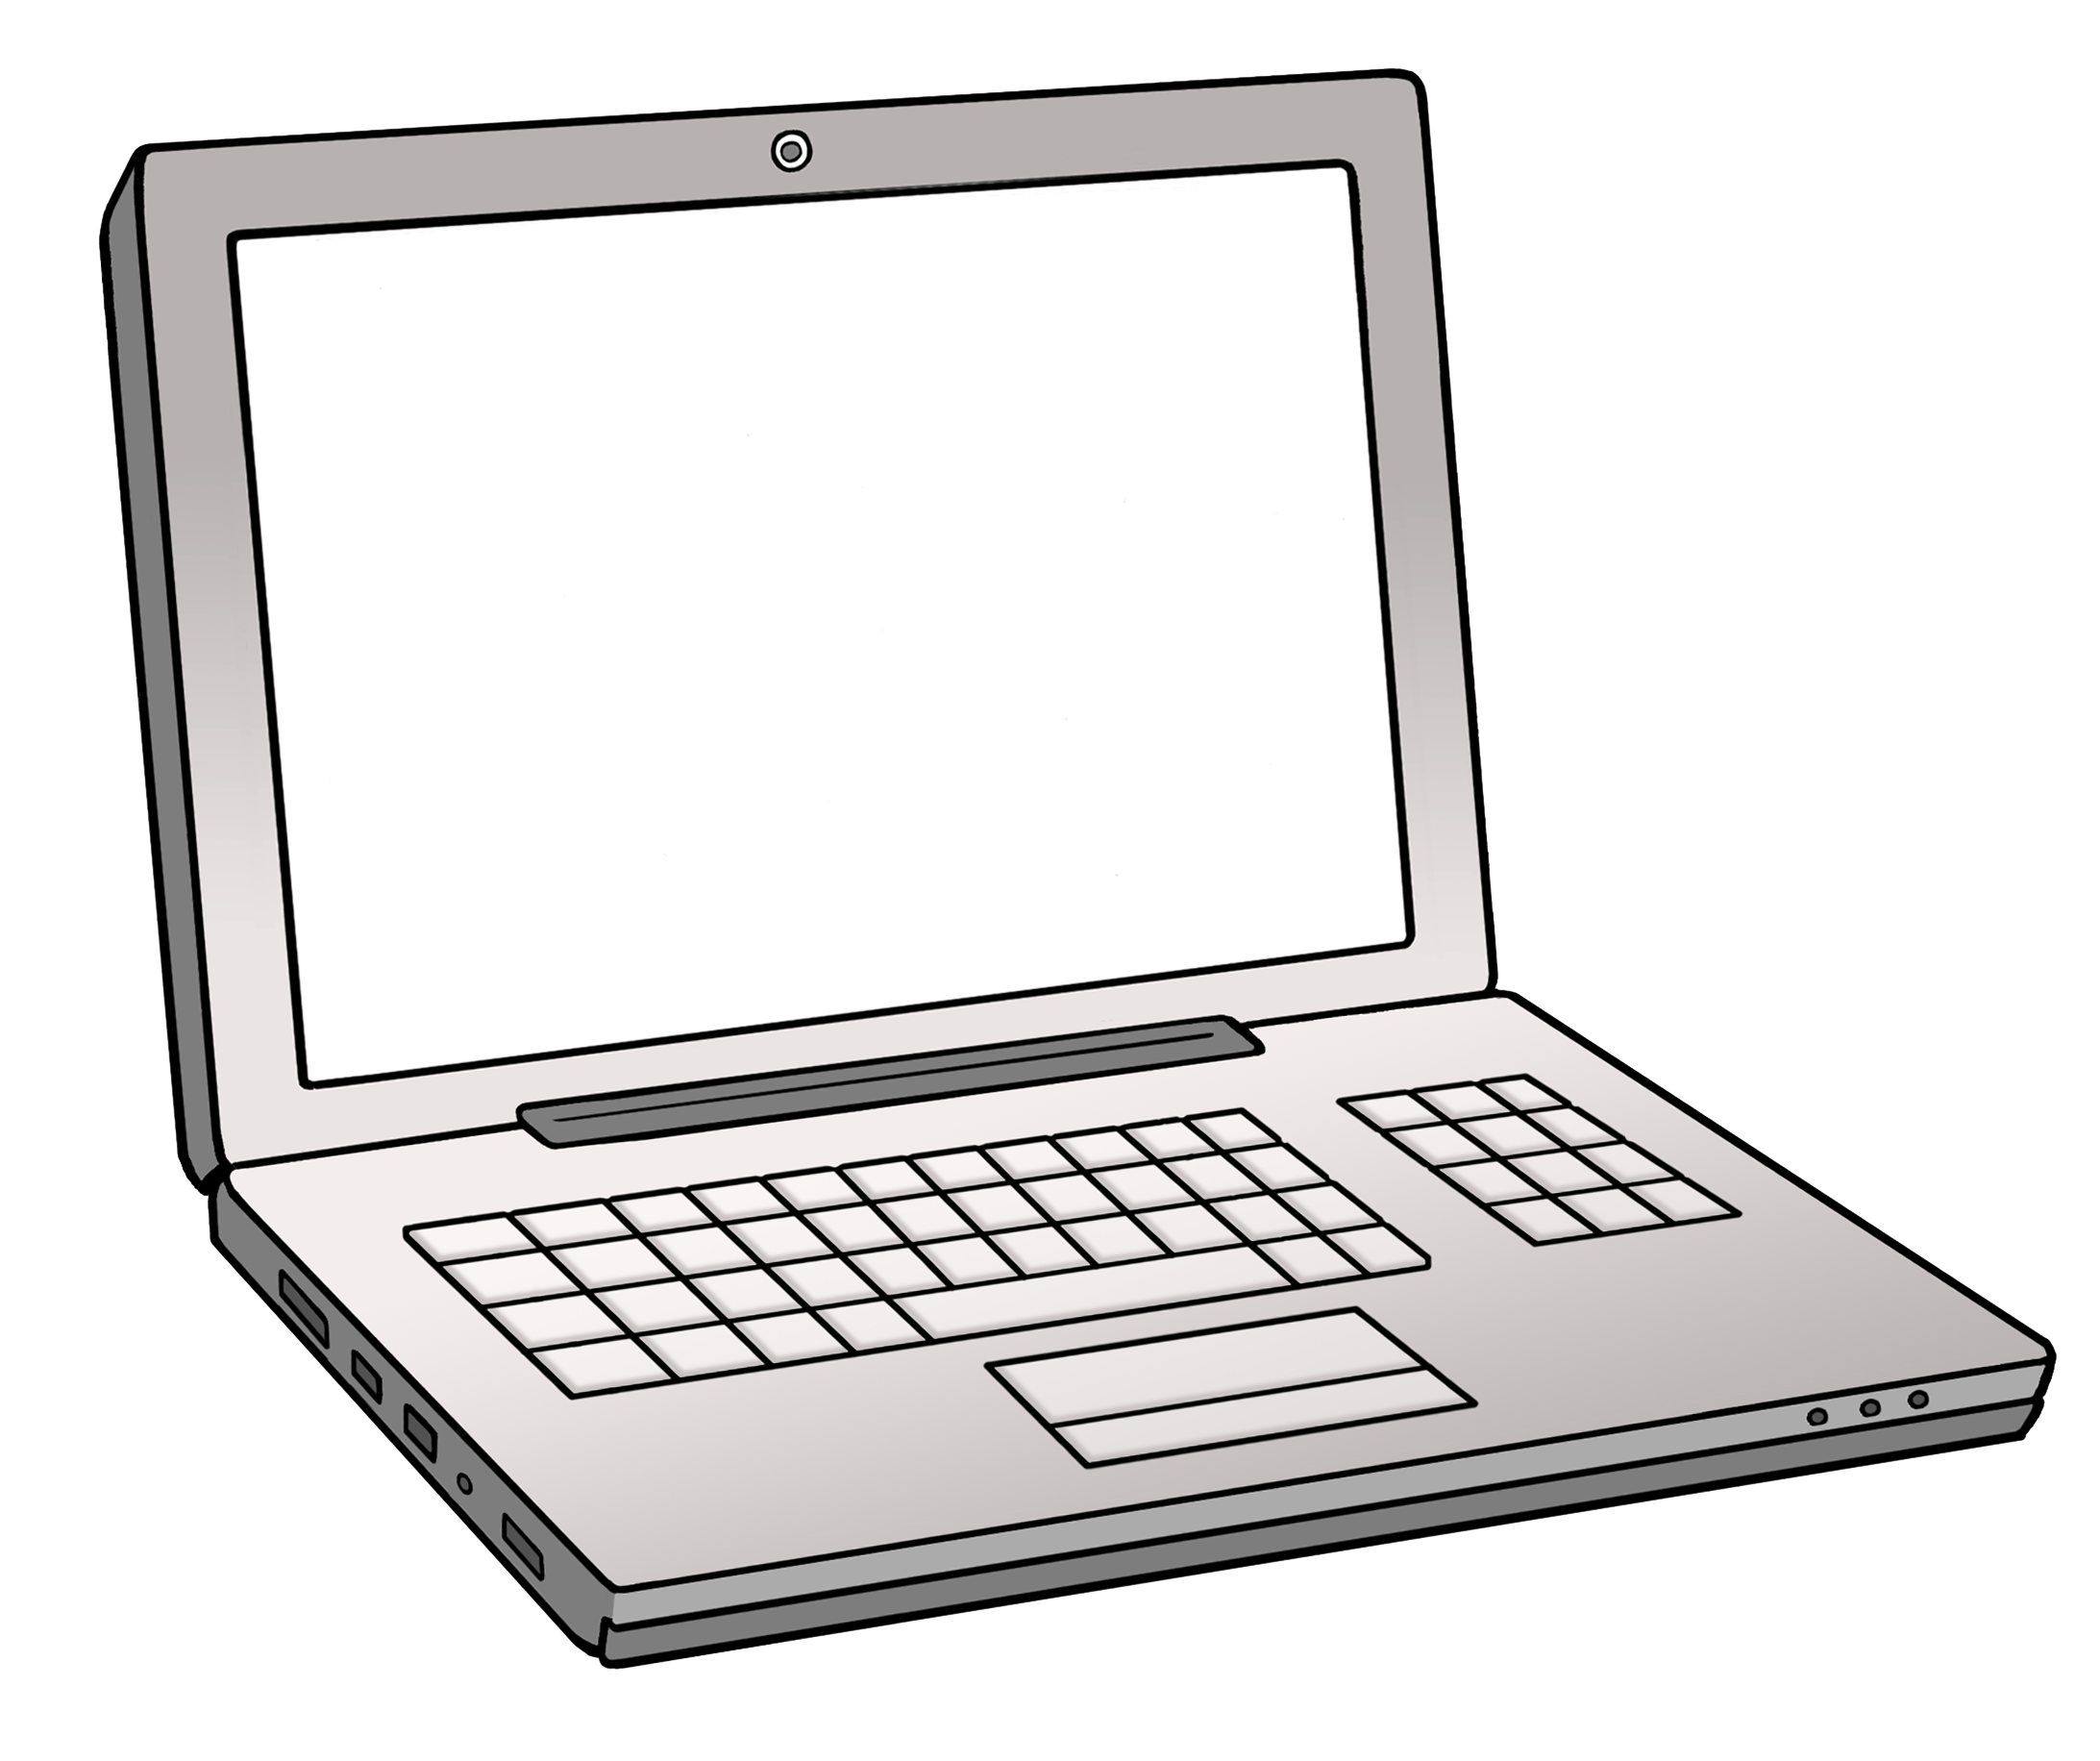 Zeichnung eines Laptops. 